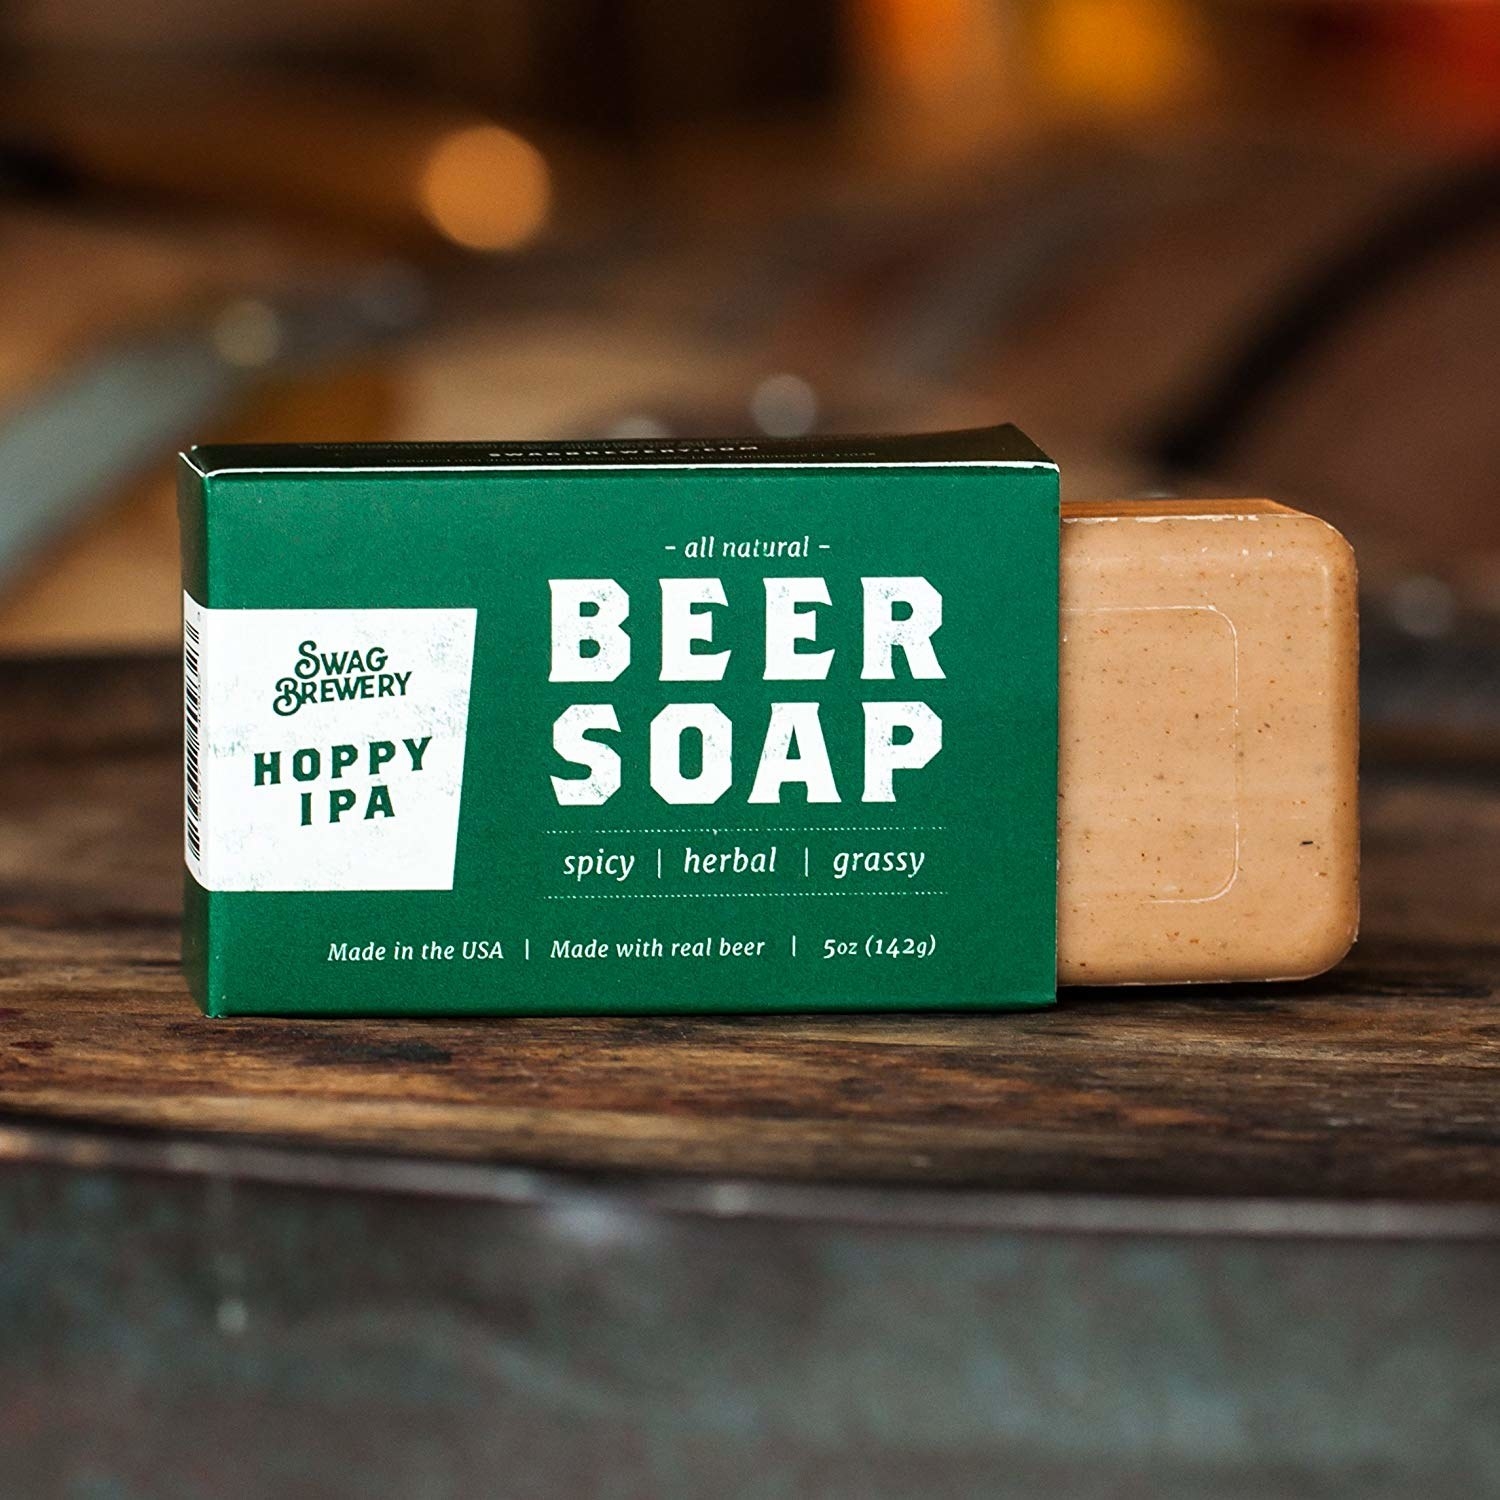 beer soap